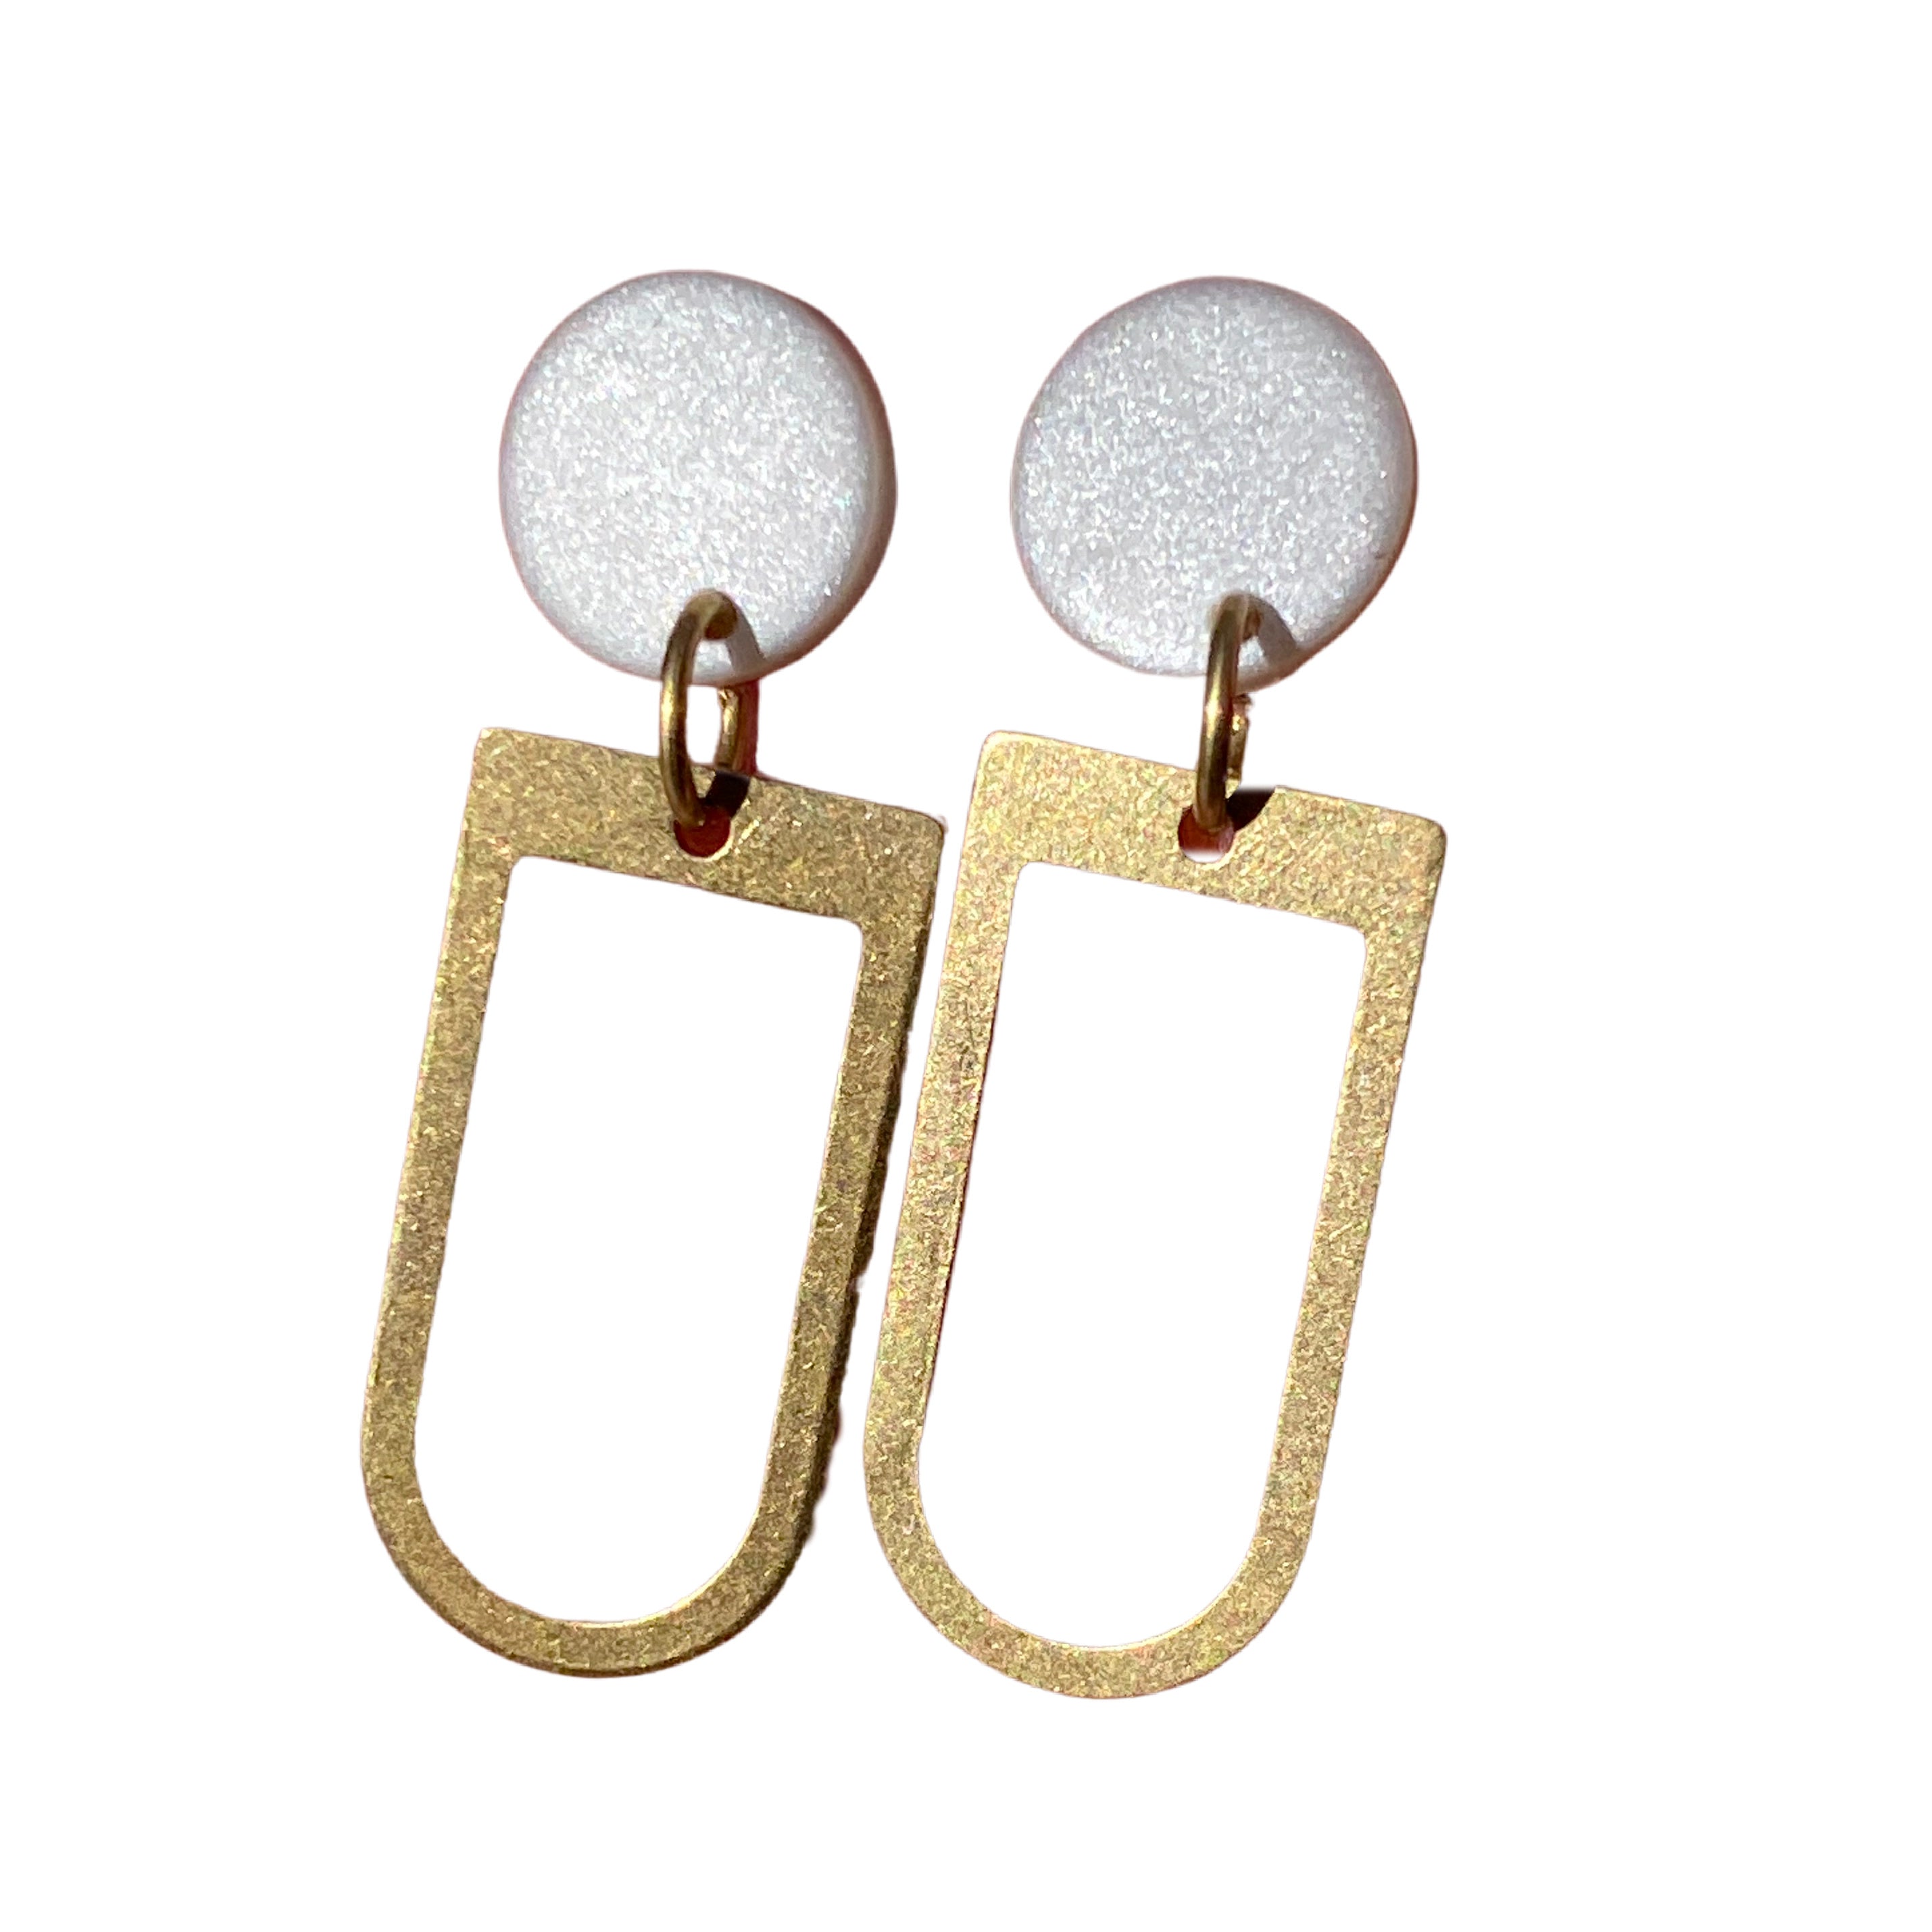 White Shimmer and Brass Modern Earrings